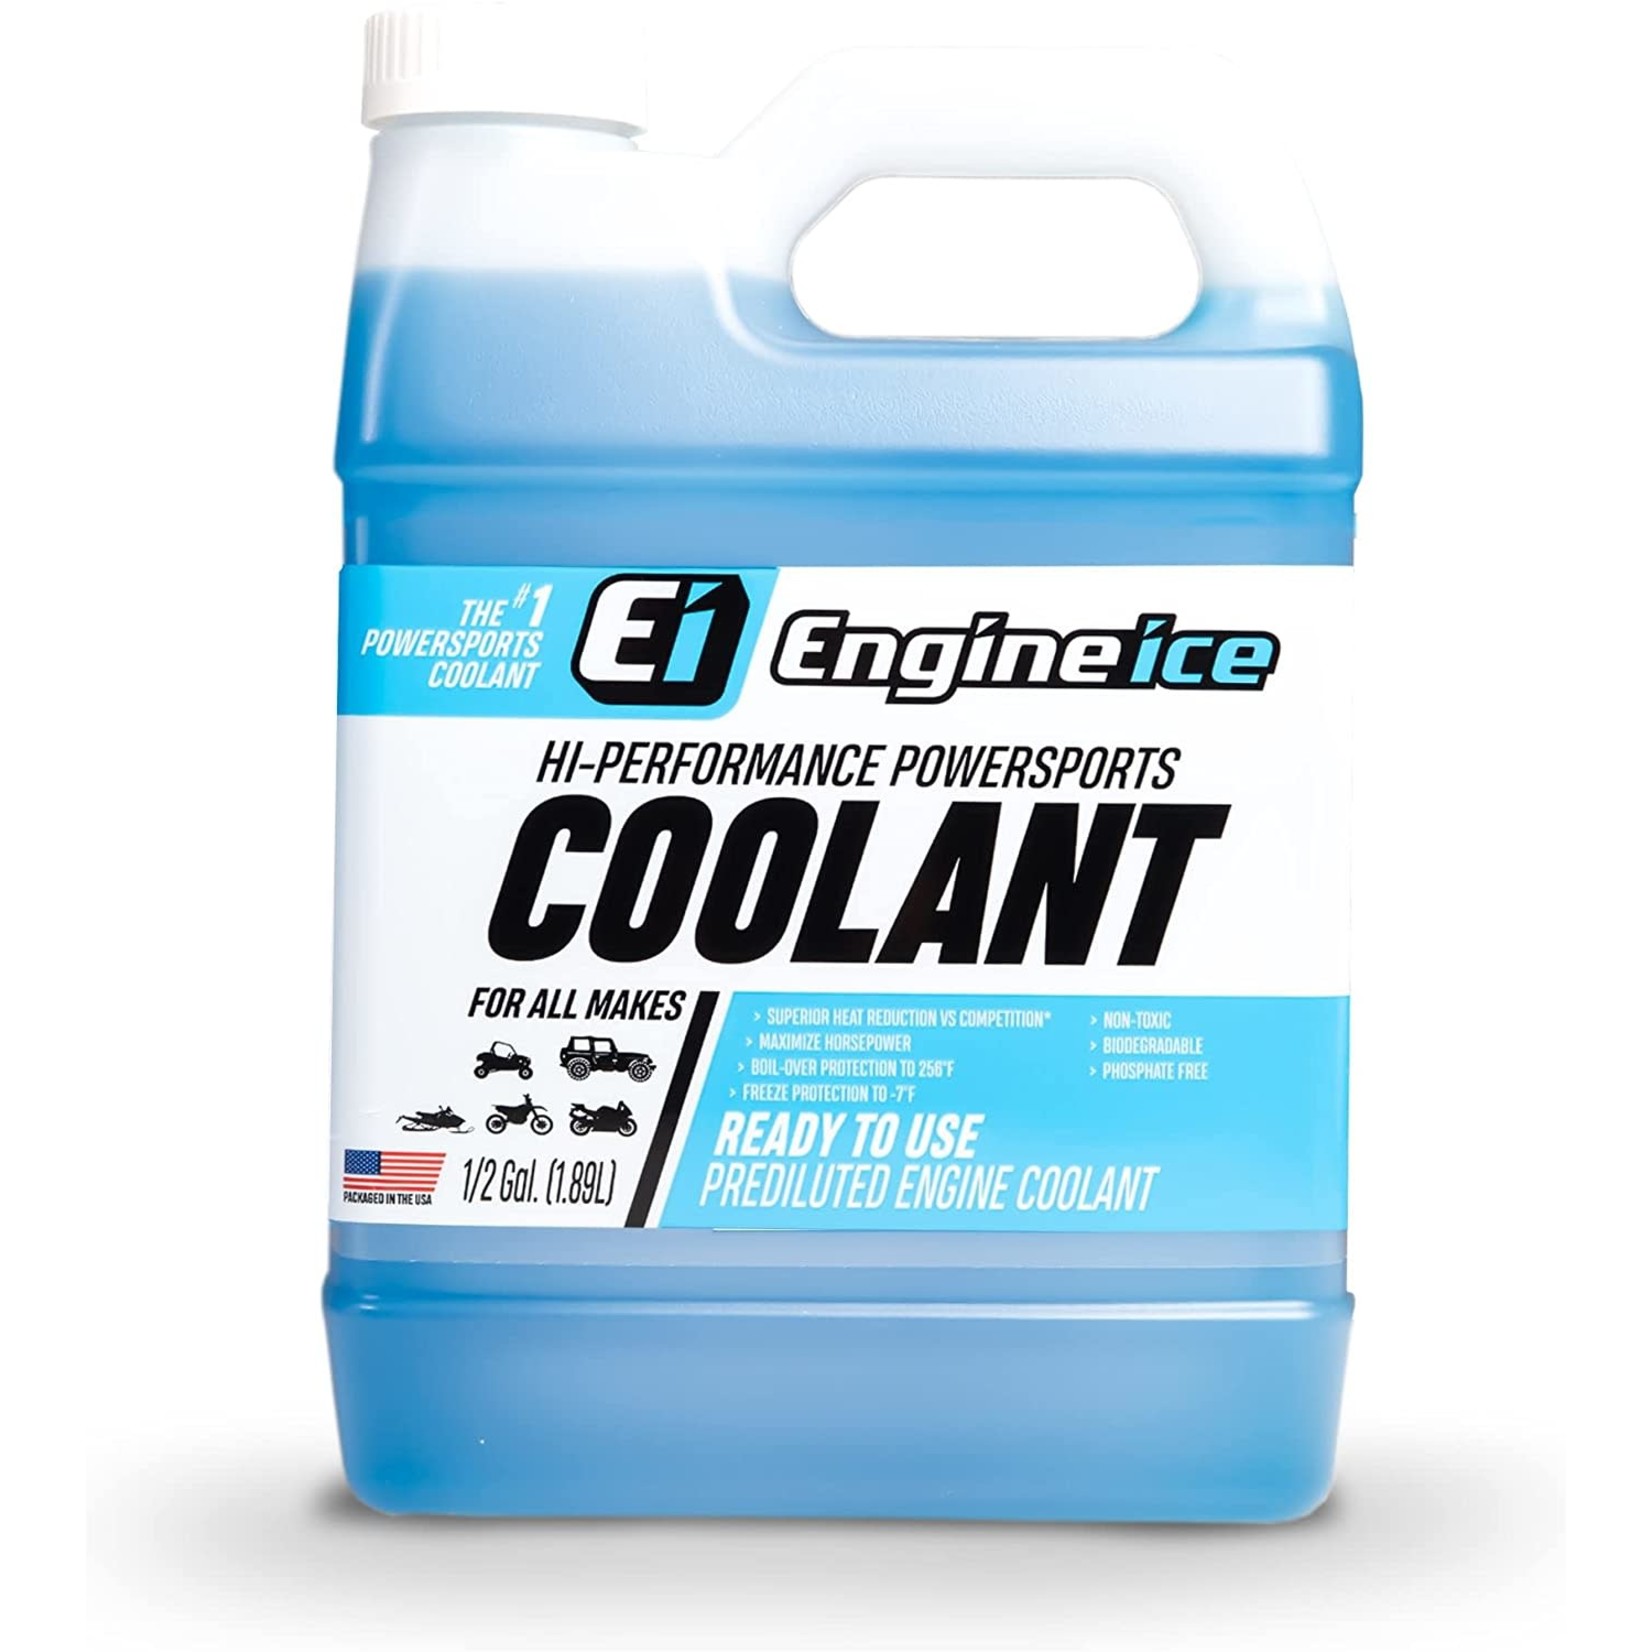 ENGINE ICE Hi-Performance Powersports Coolant